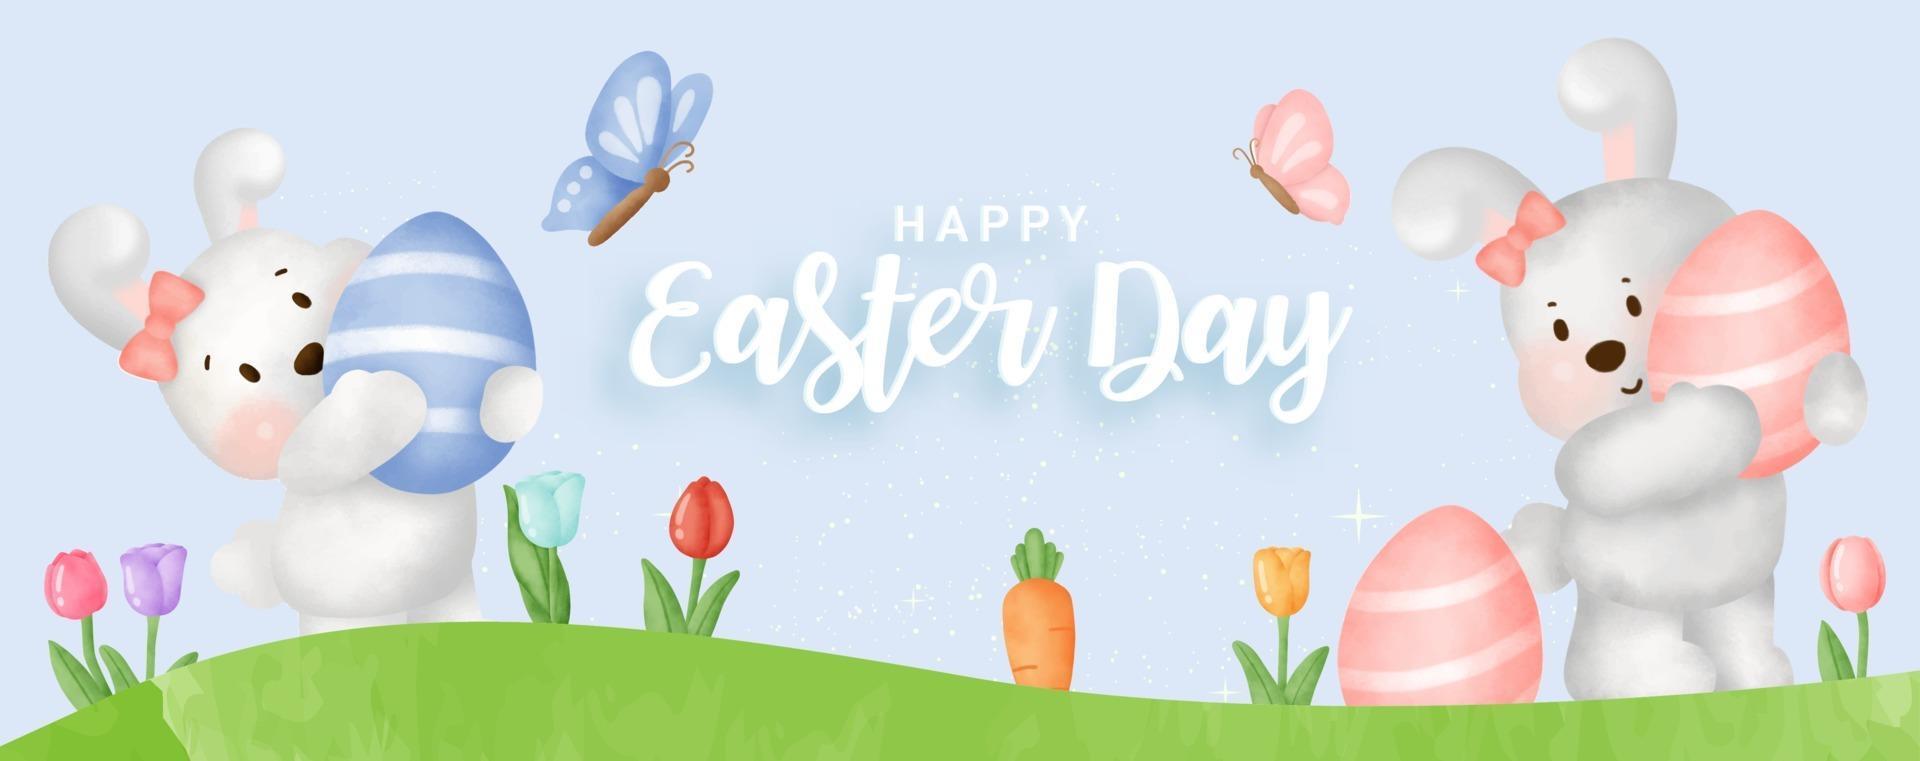 banner do dia de Páscoa com coelhos bonitos e ovos de Páscoa. vetor